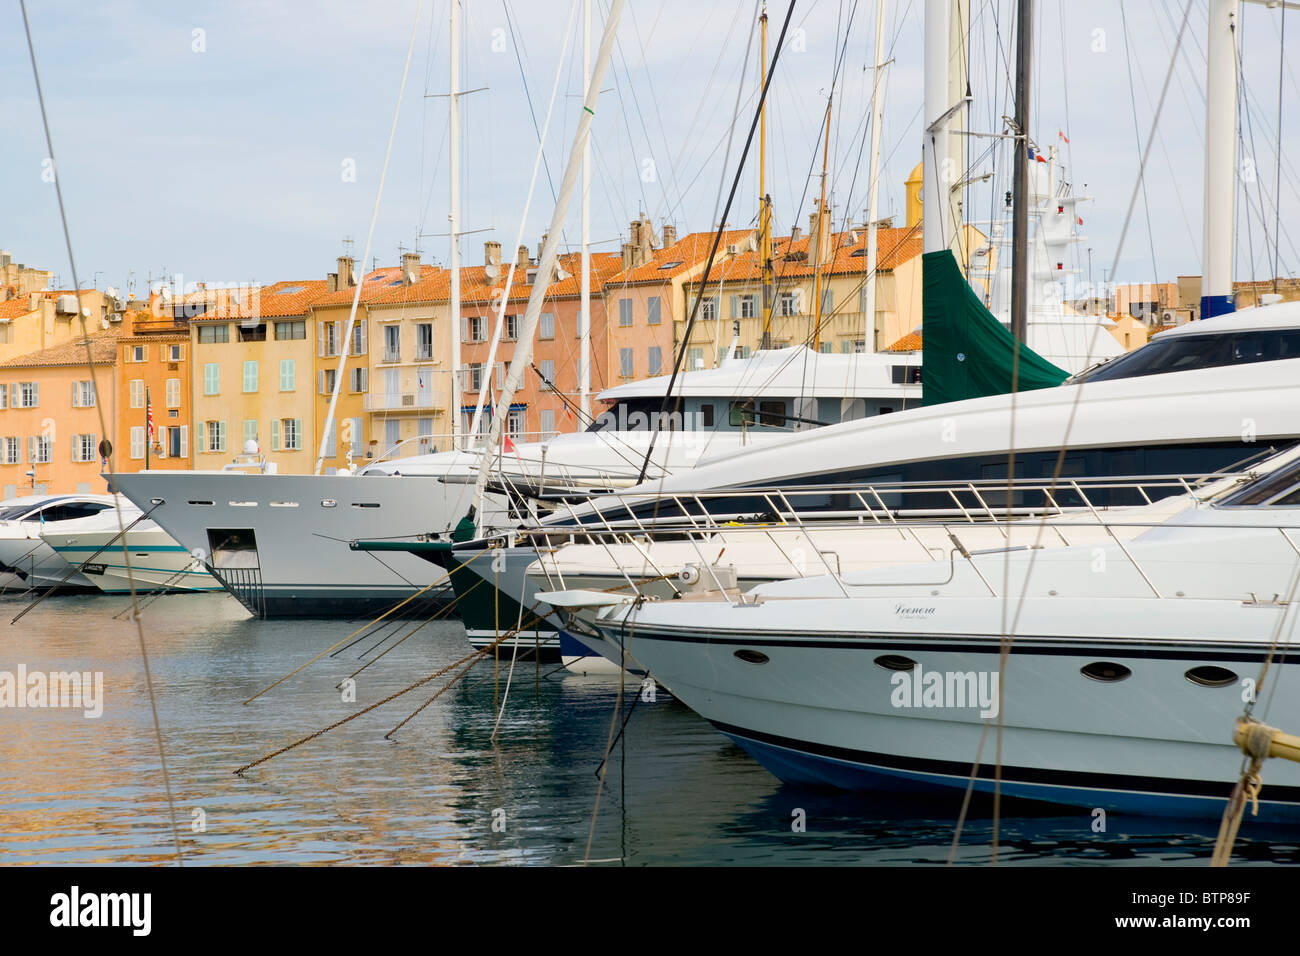 Harbour, St. Tropez, Cote d'Azur, France Stock Photo - Alamy